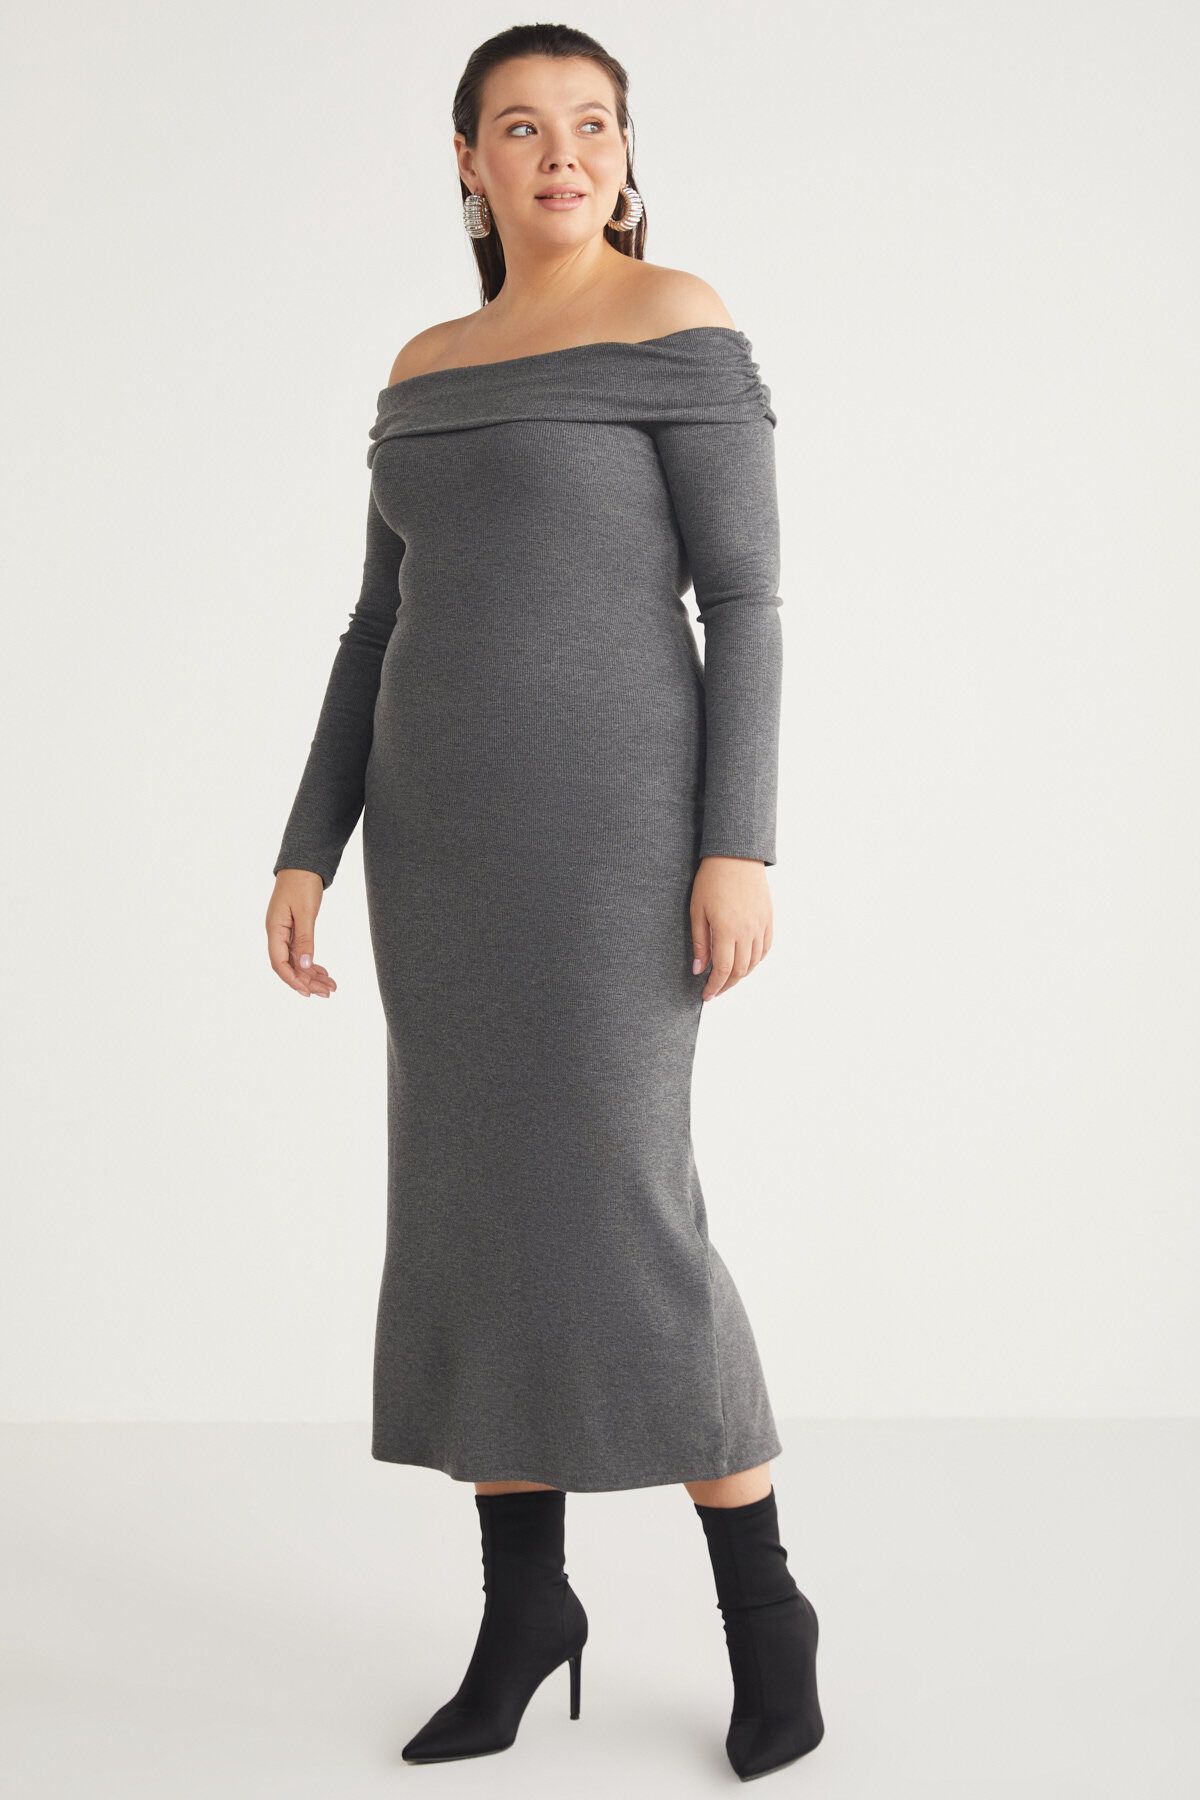 ETHIQUET Kızukıbb Kadın Kayık Yaka Uzun Kol Grimelanj Büyük Beden Elbise